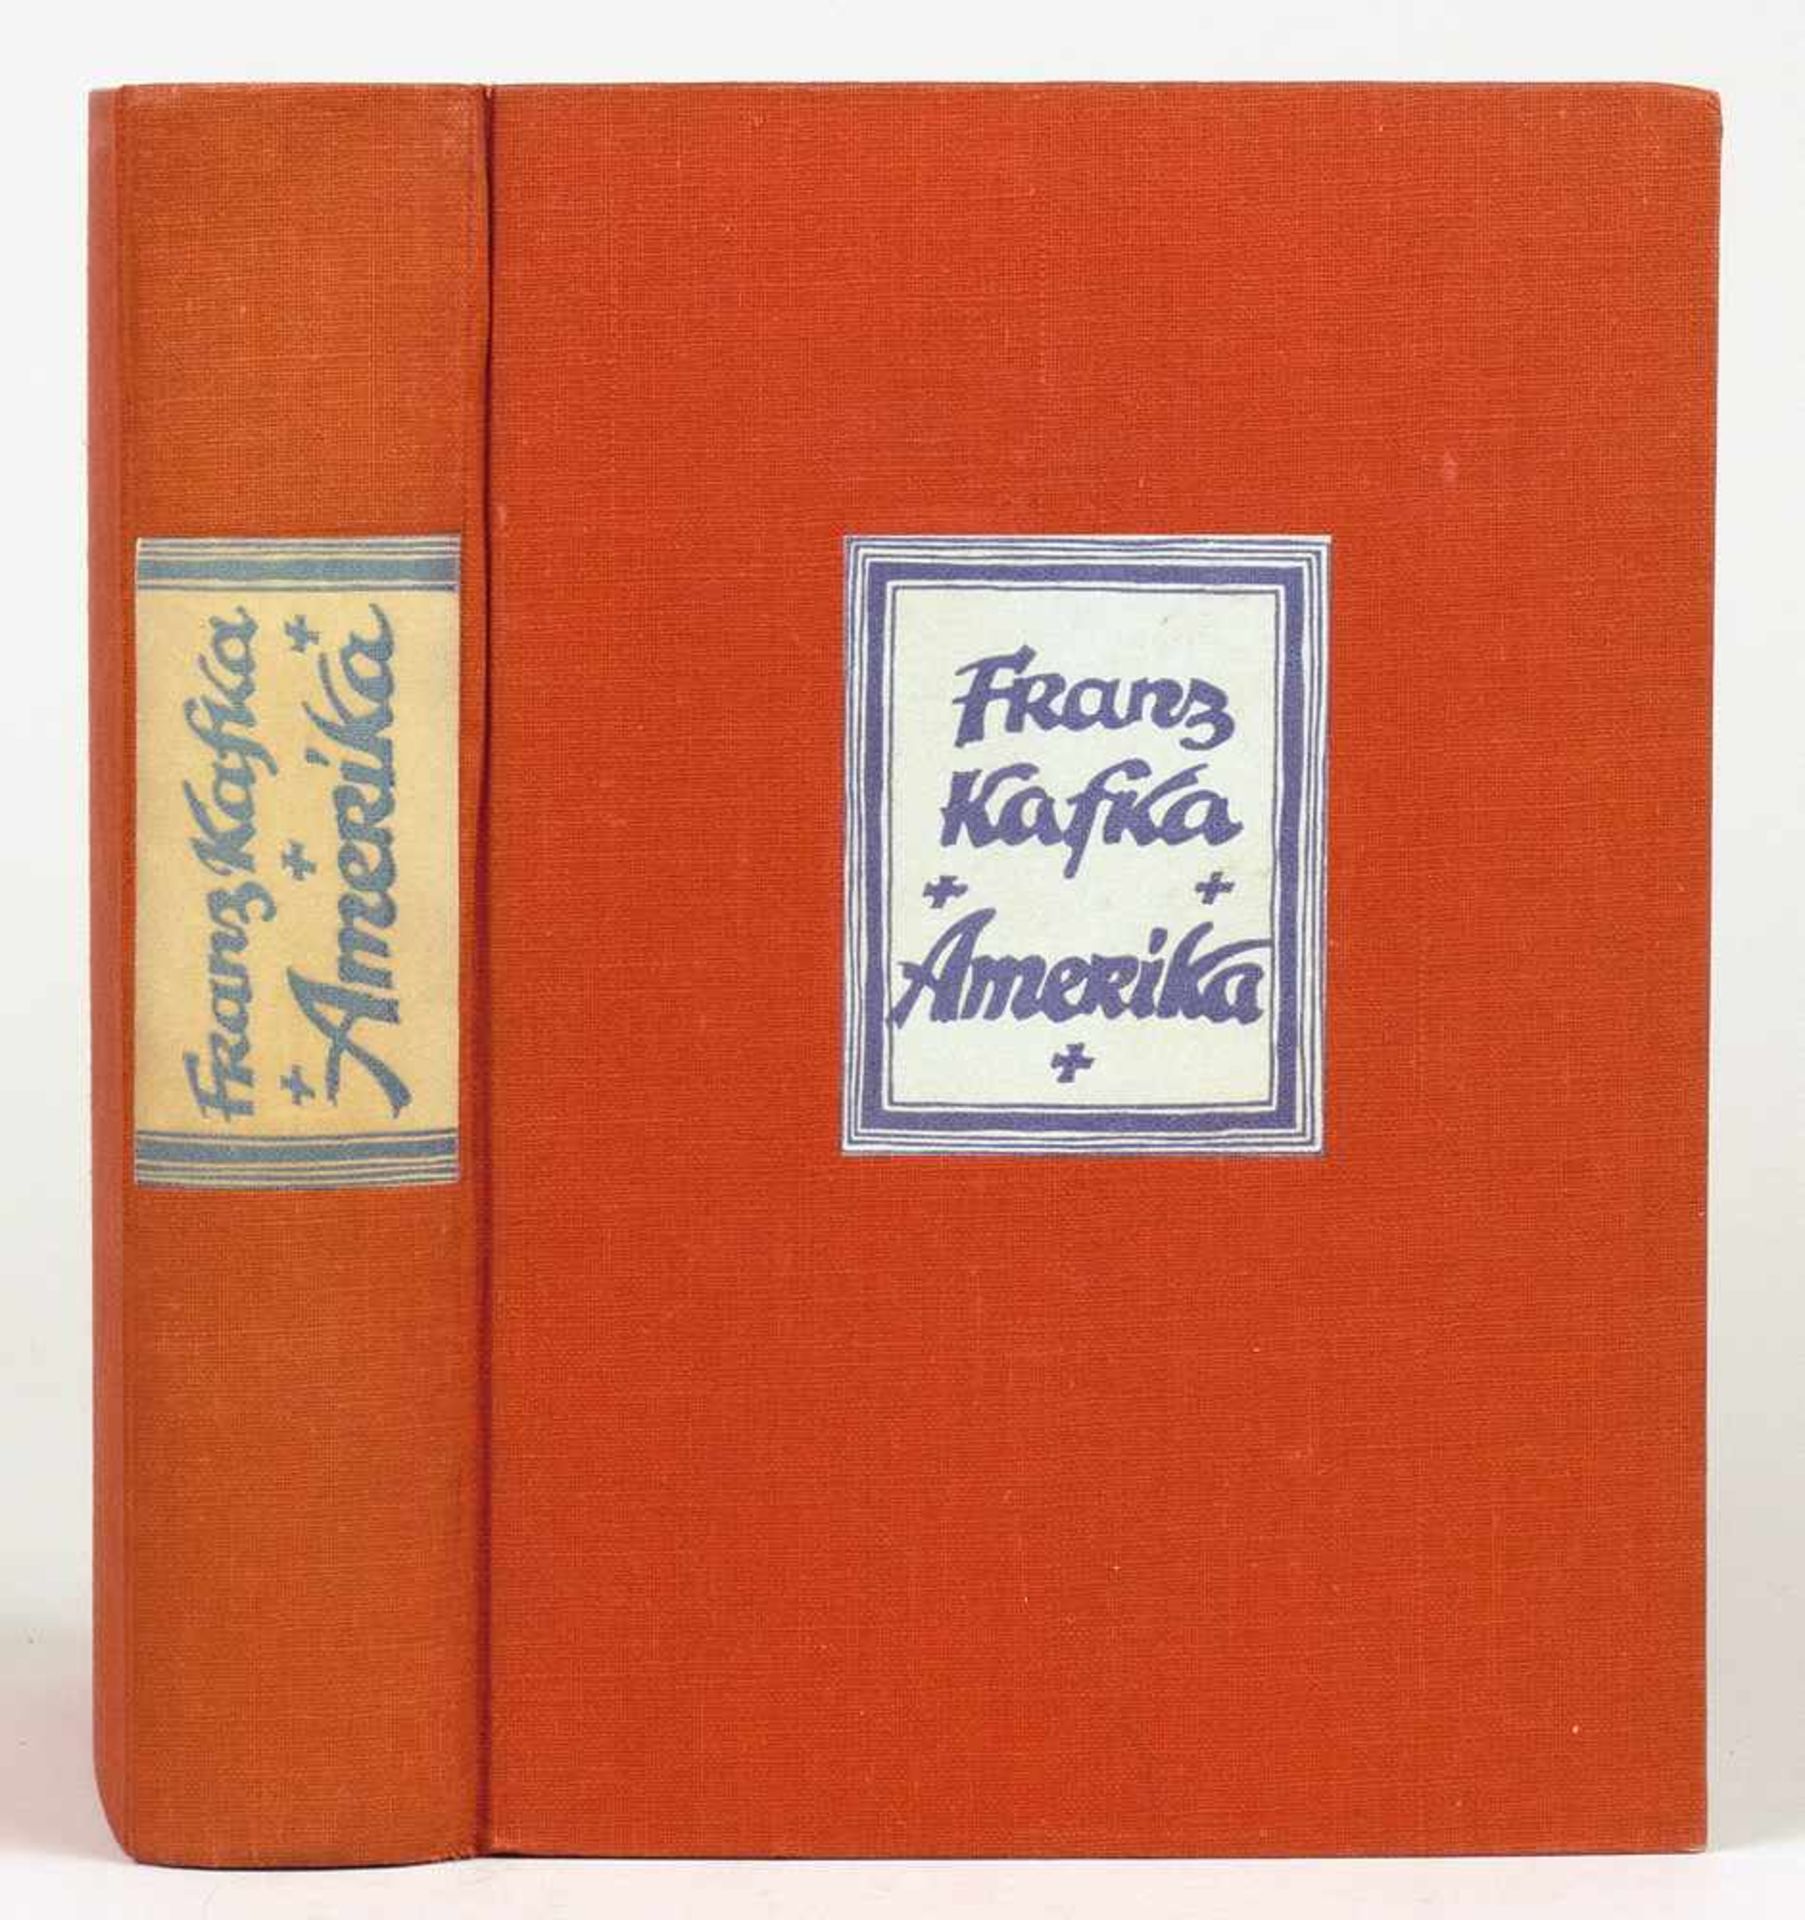 Franz Kafka. Amerika. Roman. München, Kurt Wolff 1927. Roter Originalleinenband mit blau-weißem